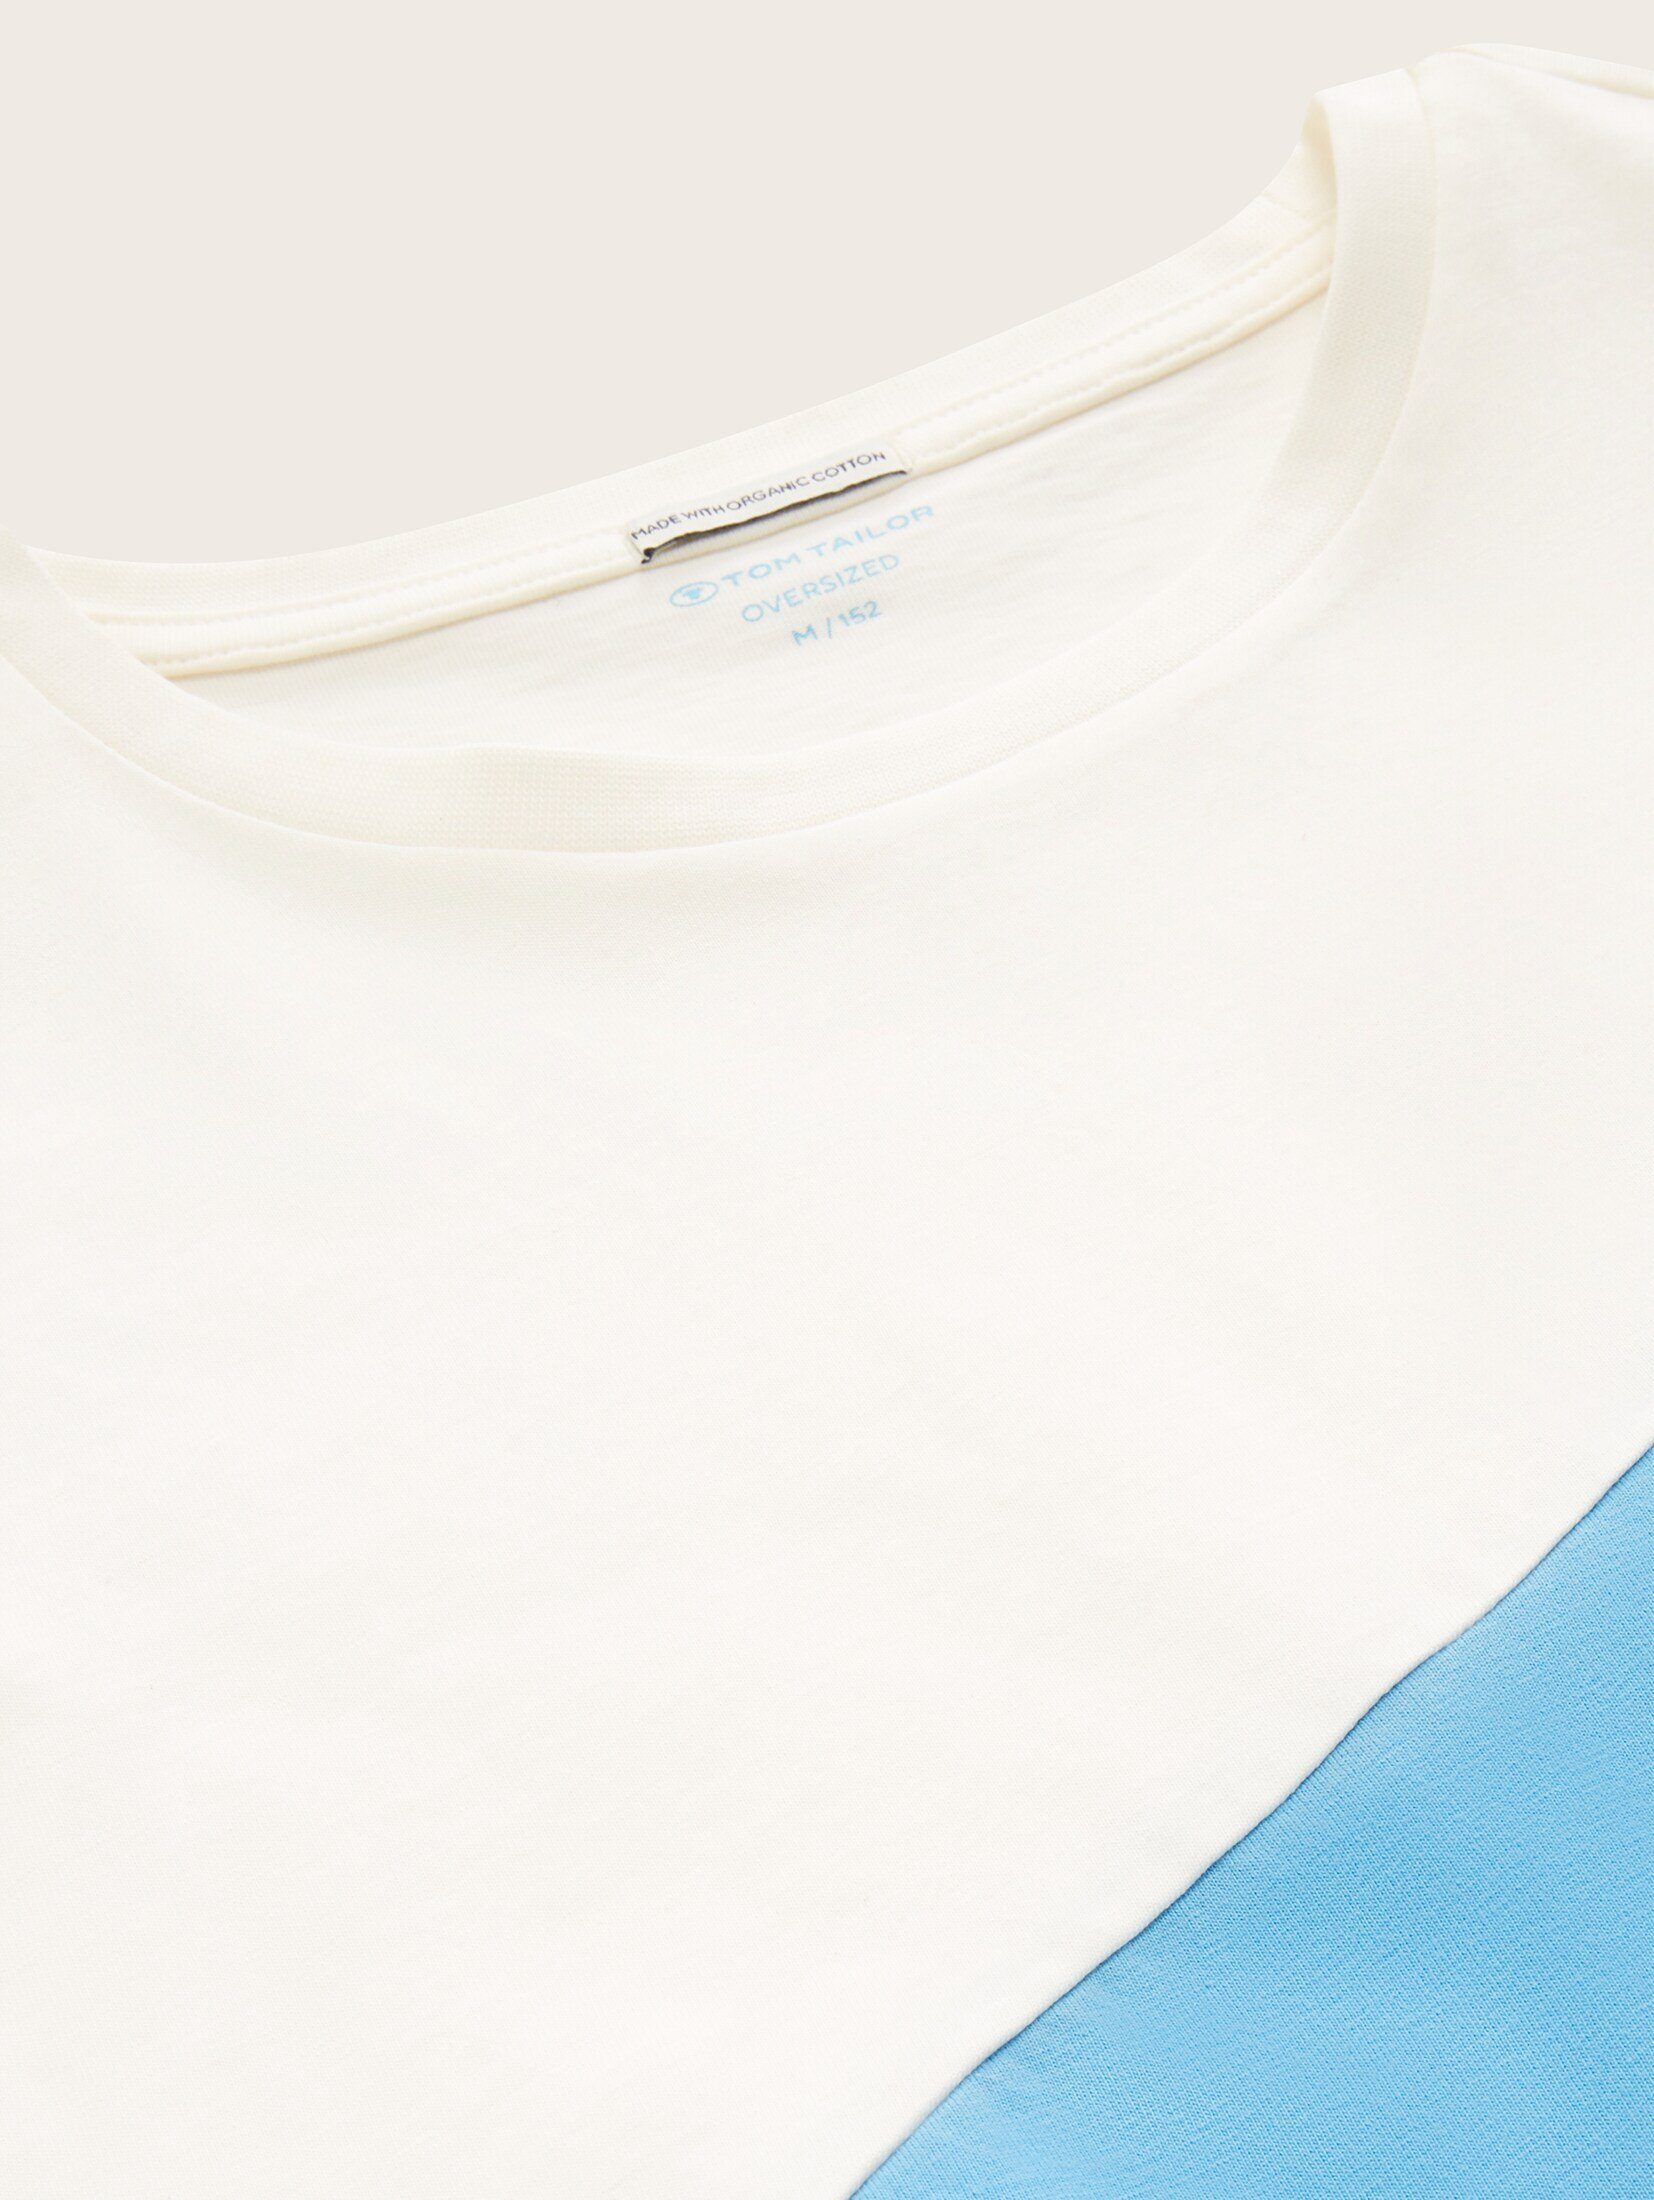 TOM TAILOR T-Shirt T-Shirt Colour soft cloud Blocking blue mit